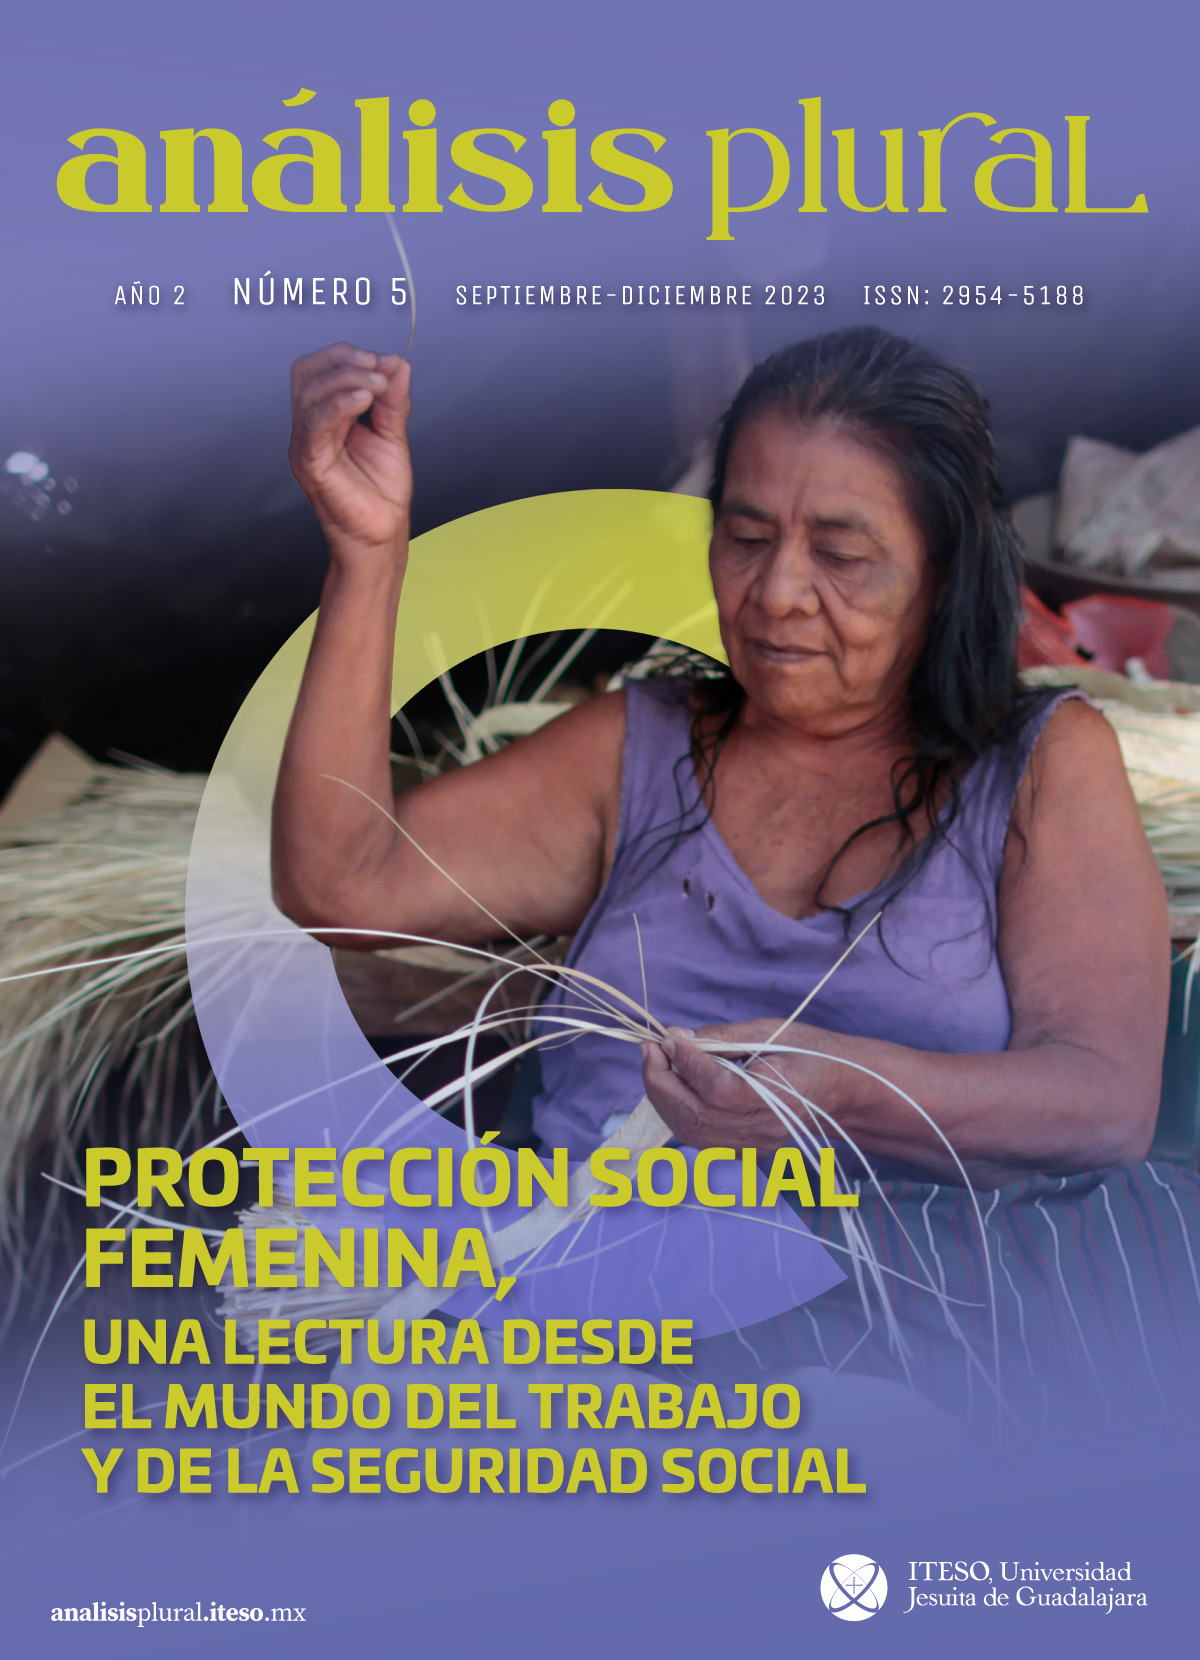 						Ver Núm. 5 (2): Protección social femenina, una lectura desde el mundo del trabajo y de la seguridad social
					